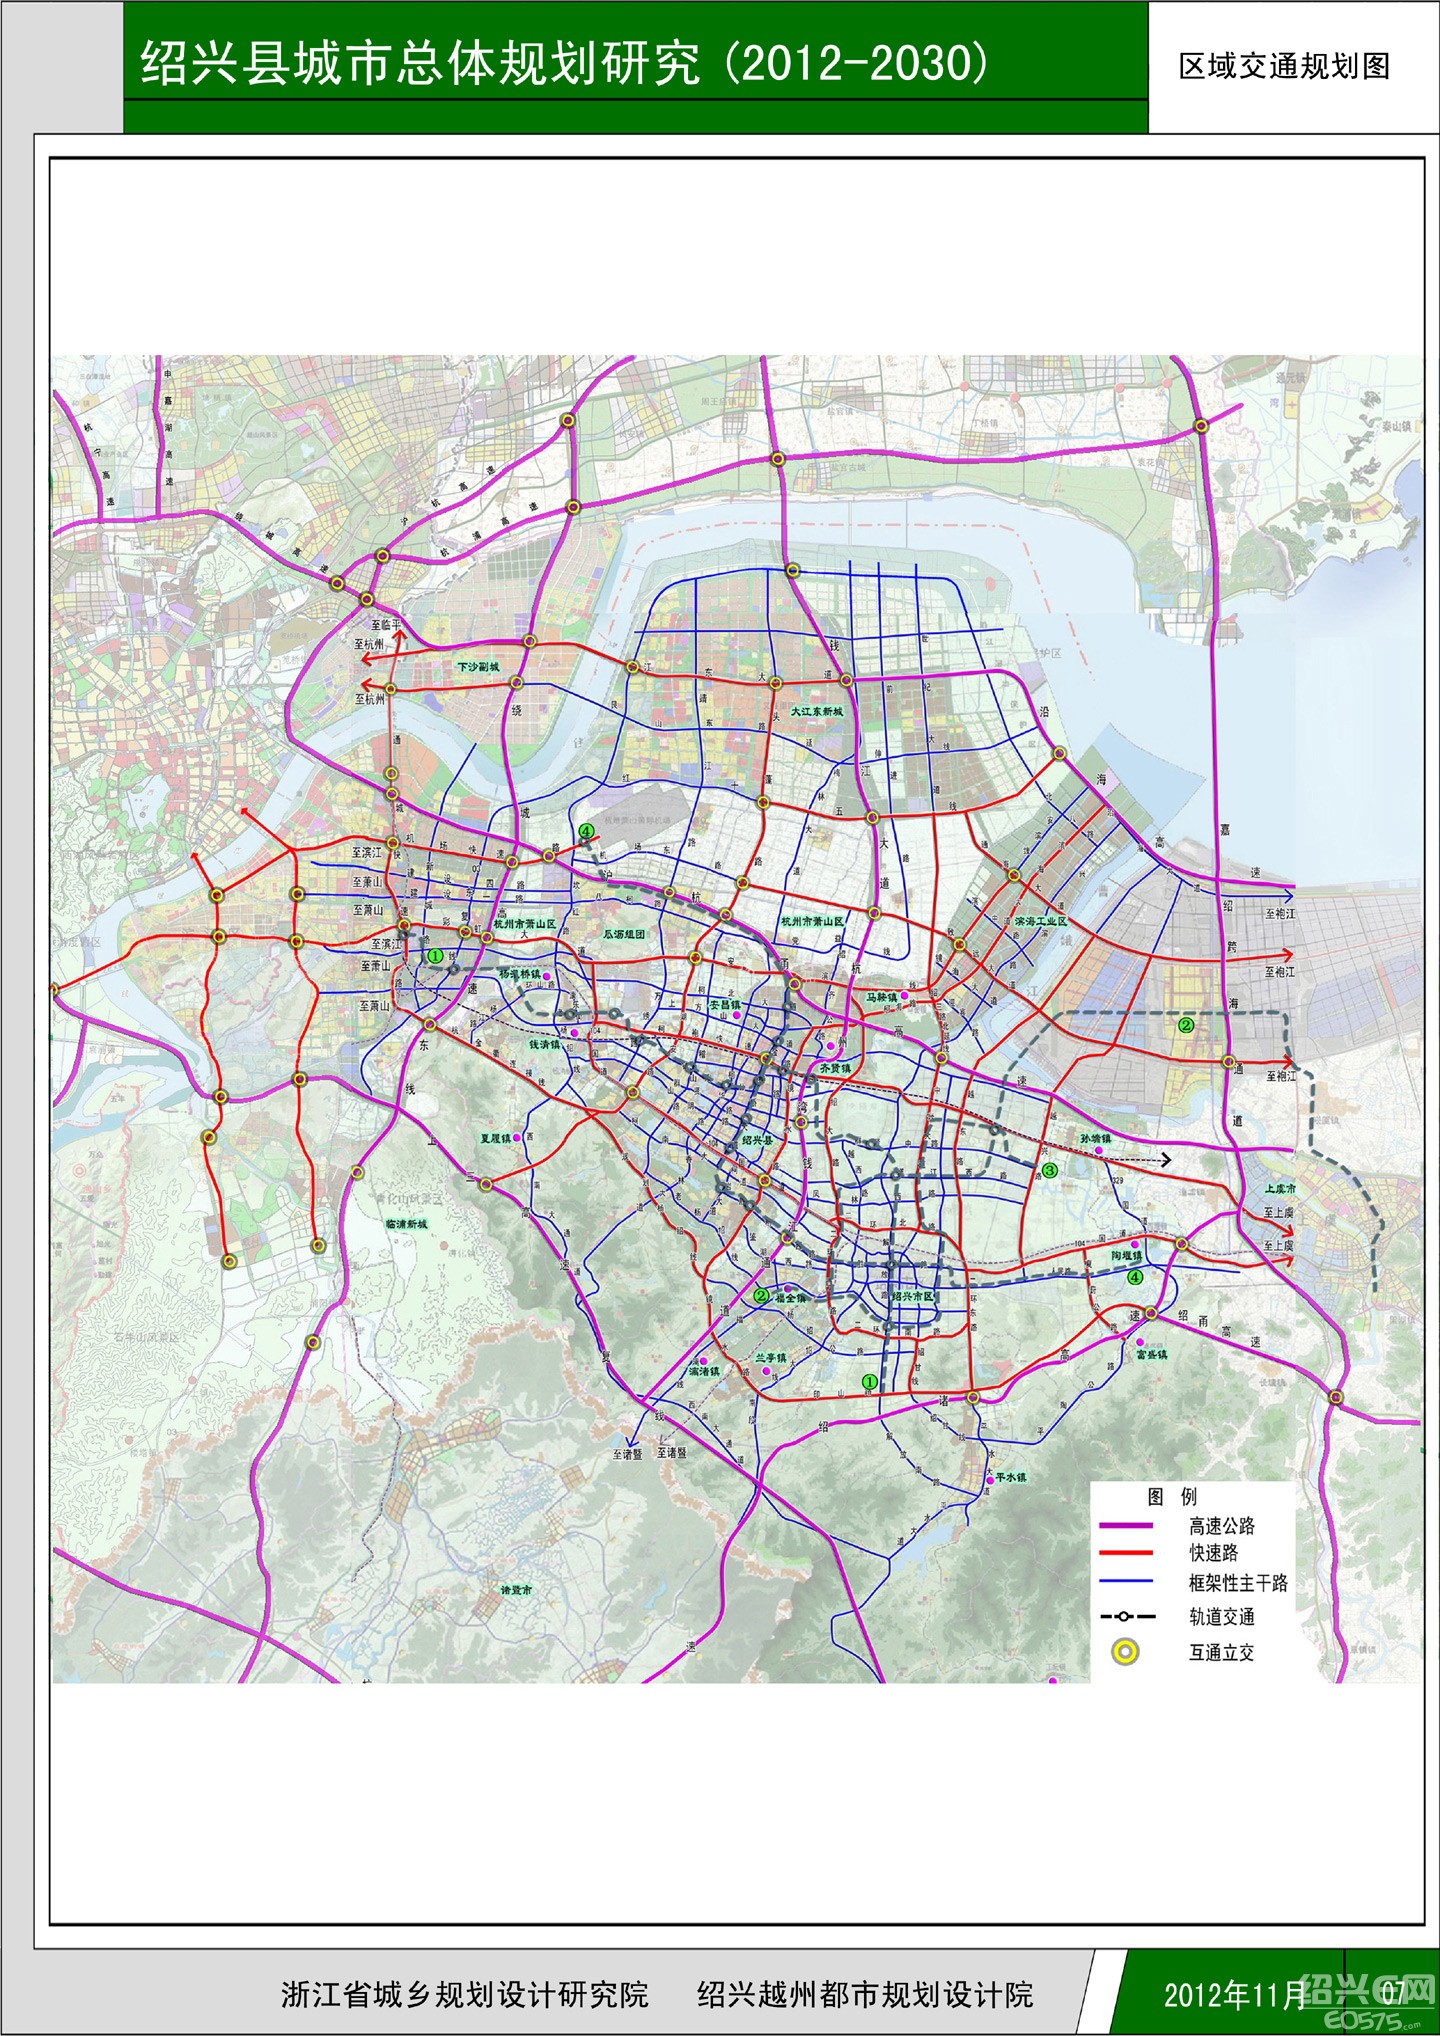 绍兴县城市总体规划研究区域交通规划图(2012-2030)